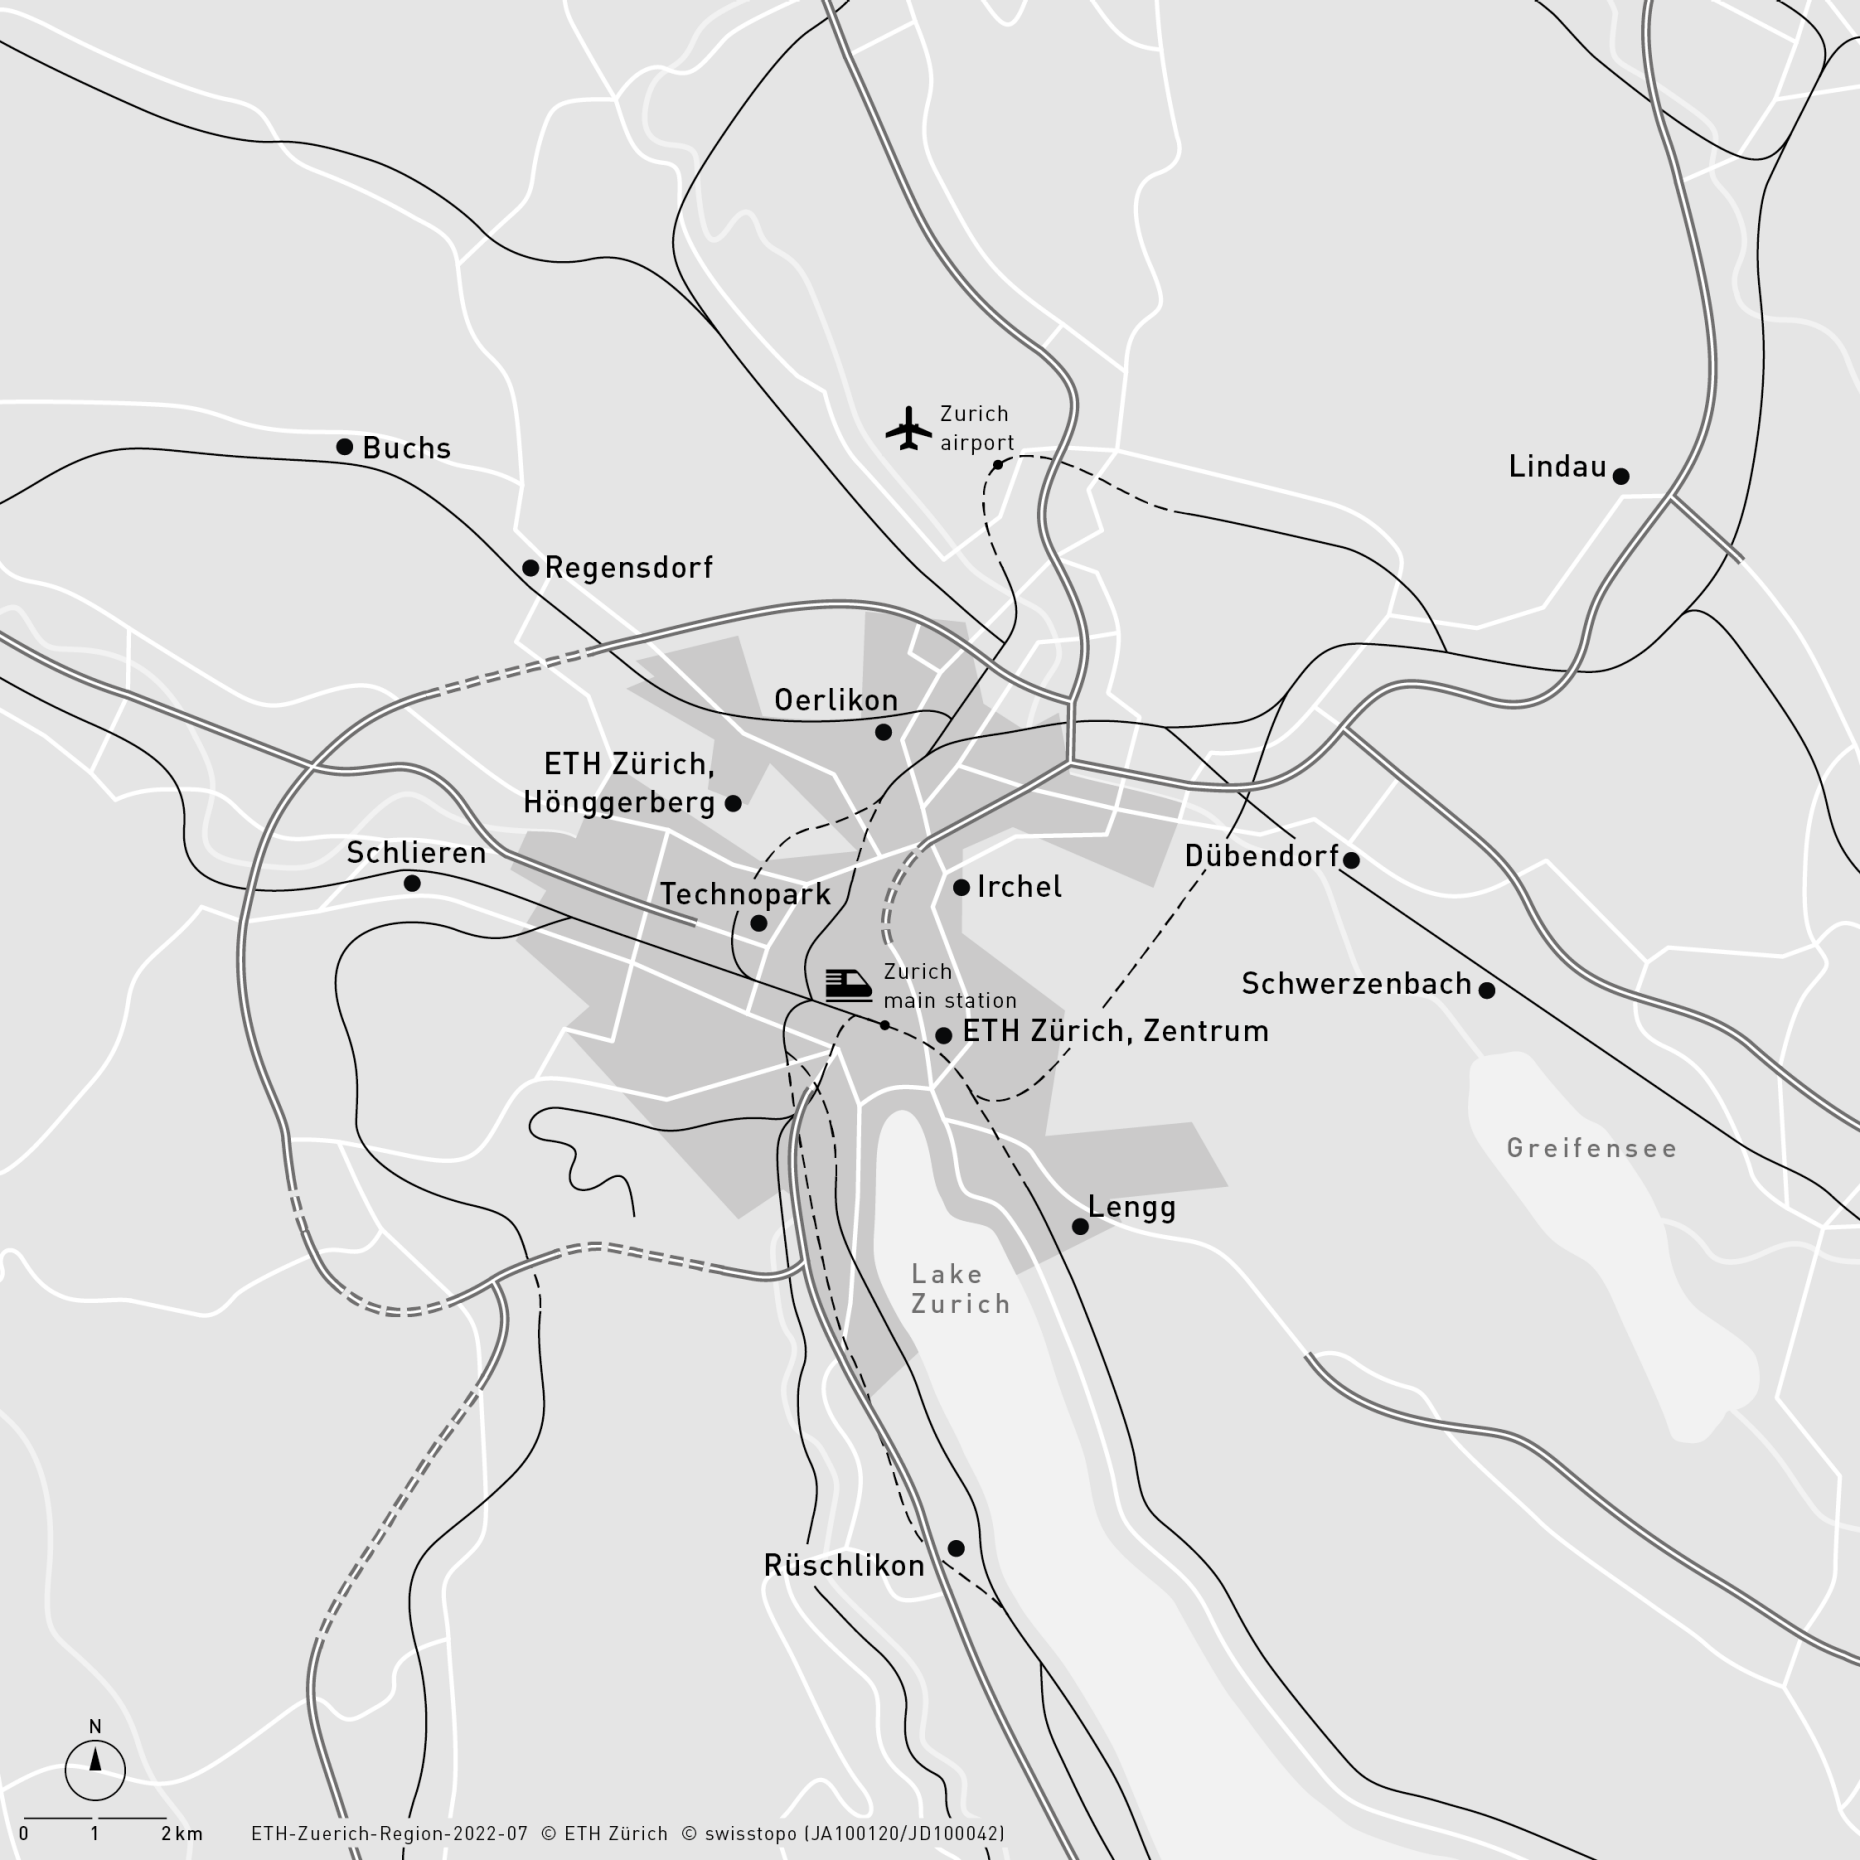 Enlarged view: Area plan Zurich region